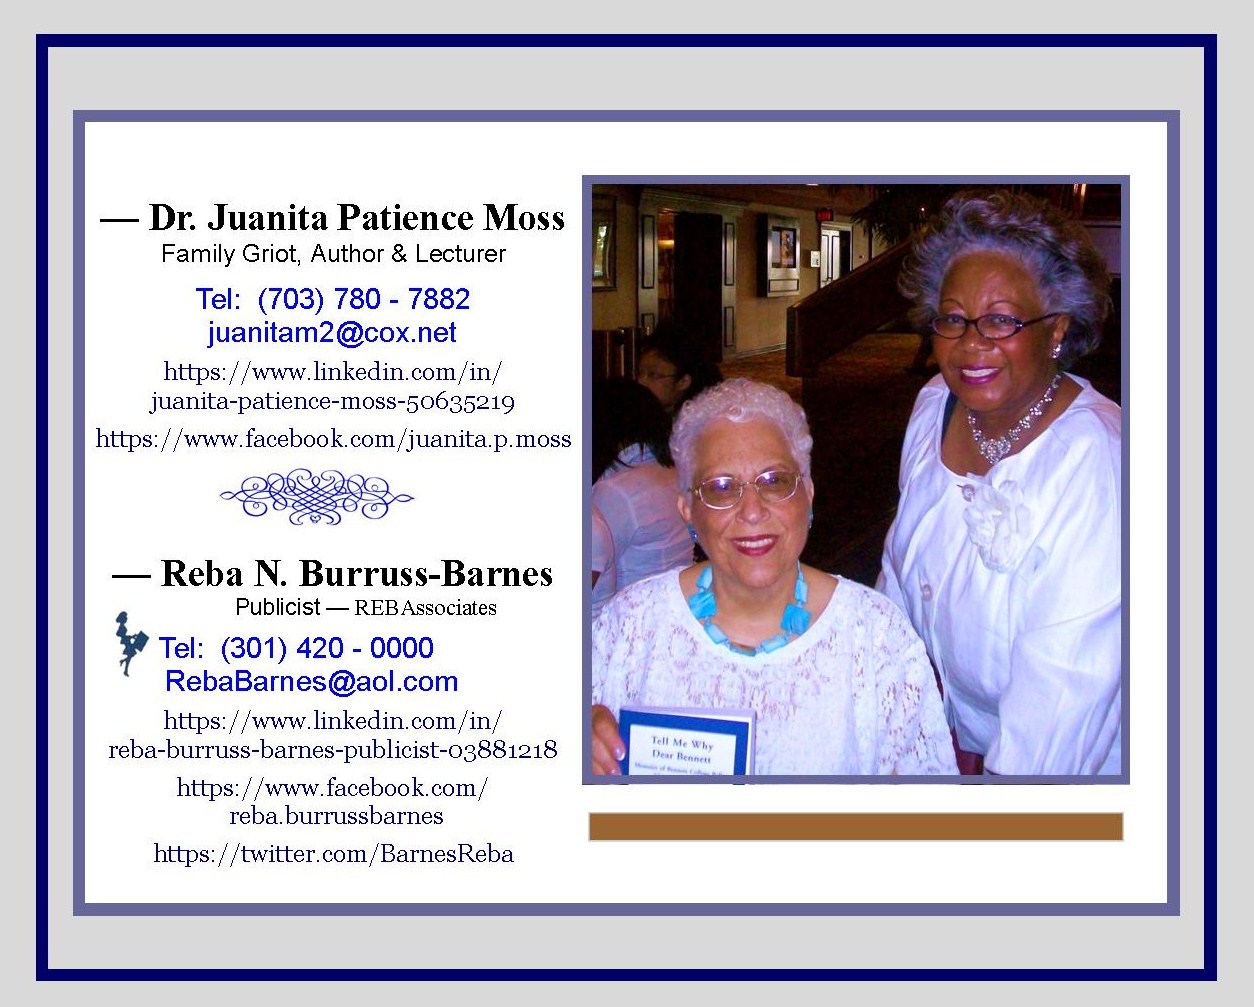 Dr. Juanita Patience Moss and Reba Burruss Barnes